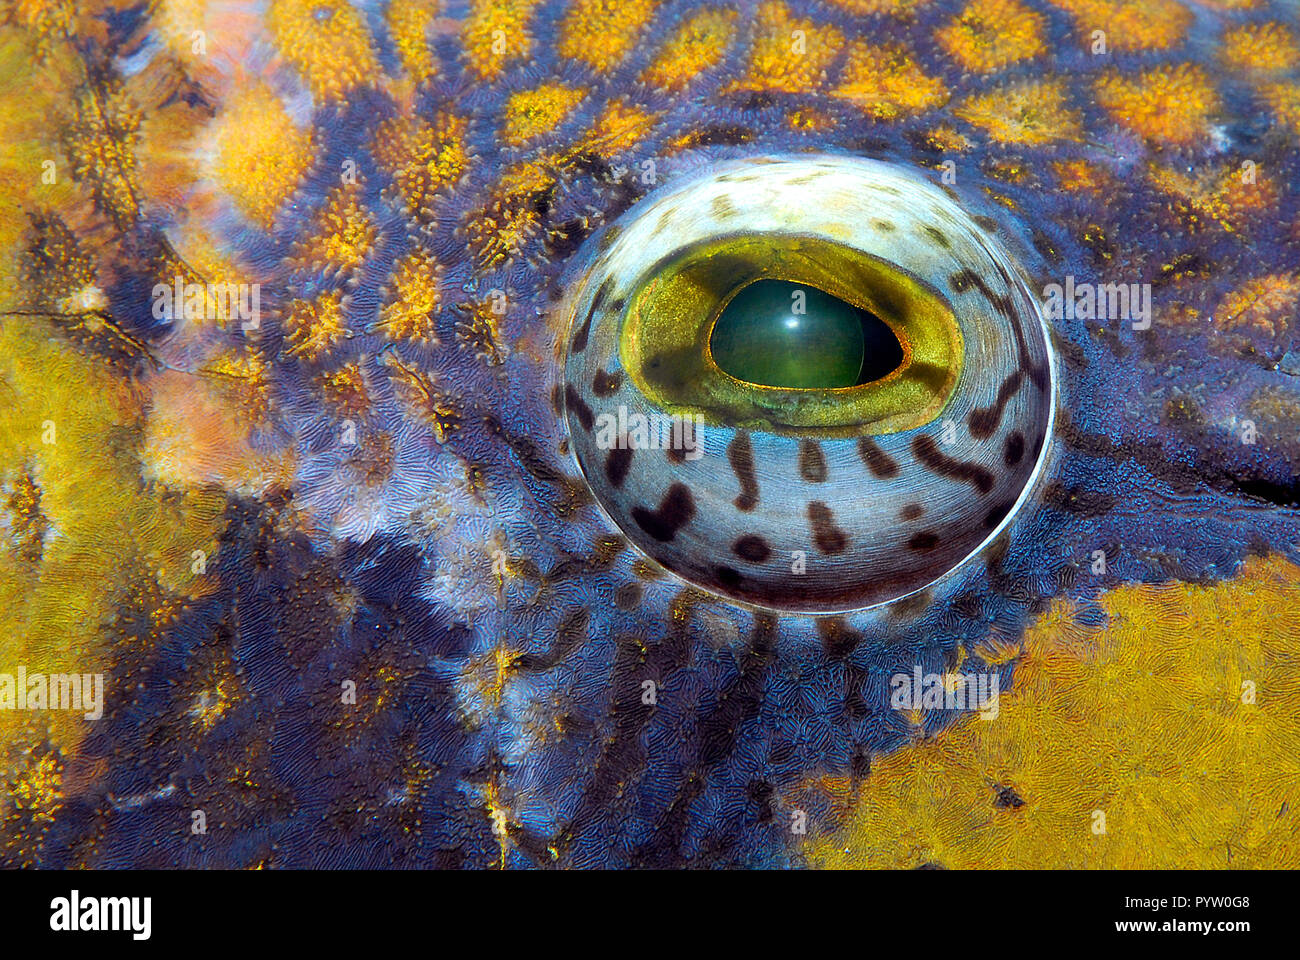 Détail de l'œil d'un géant ou balistes Titan triggerfish (Balistoides viridescens), Hurghada, Egypte Banque D'Images